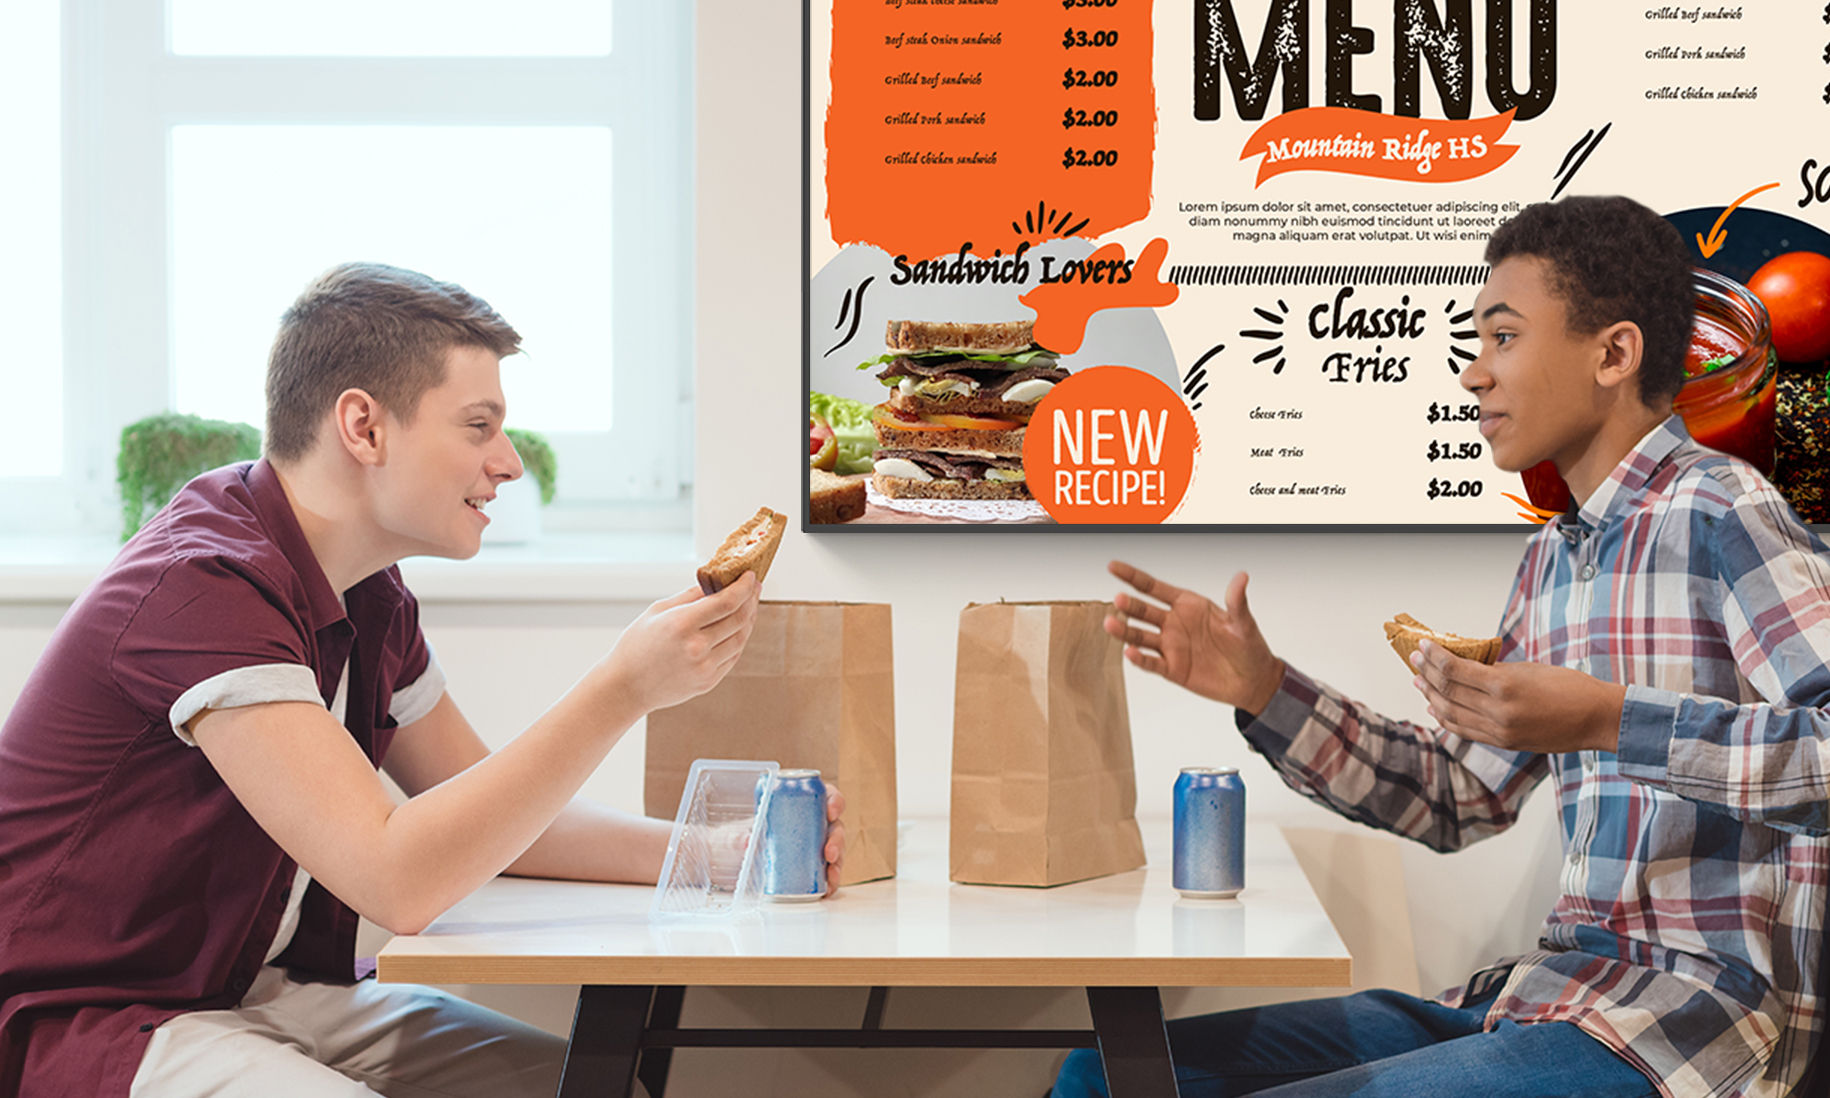 Zwei Studenten beim gemeinsamen Mittagessen in der Cafeteria vor einem Digital Signage Display mit Speisekarte